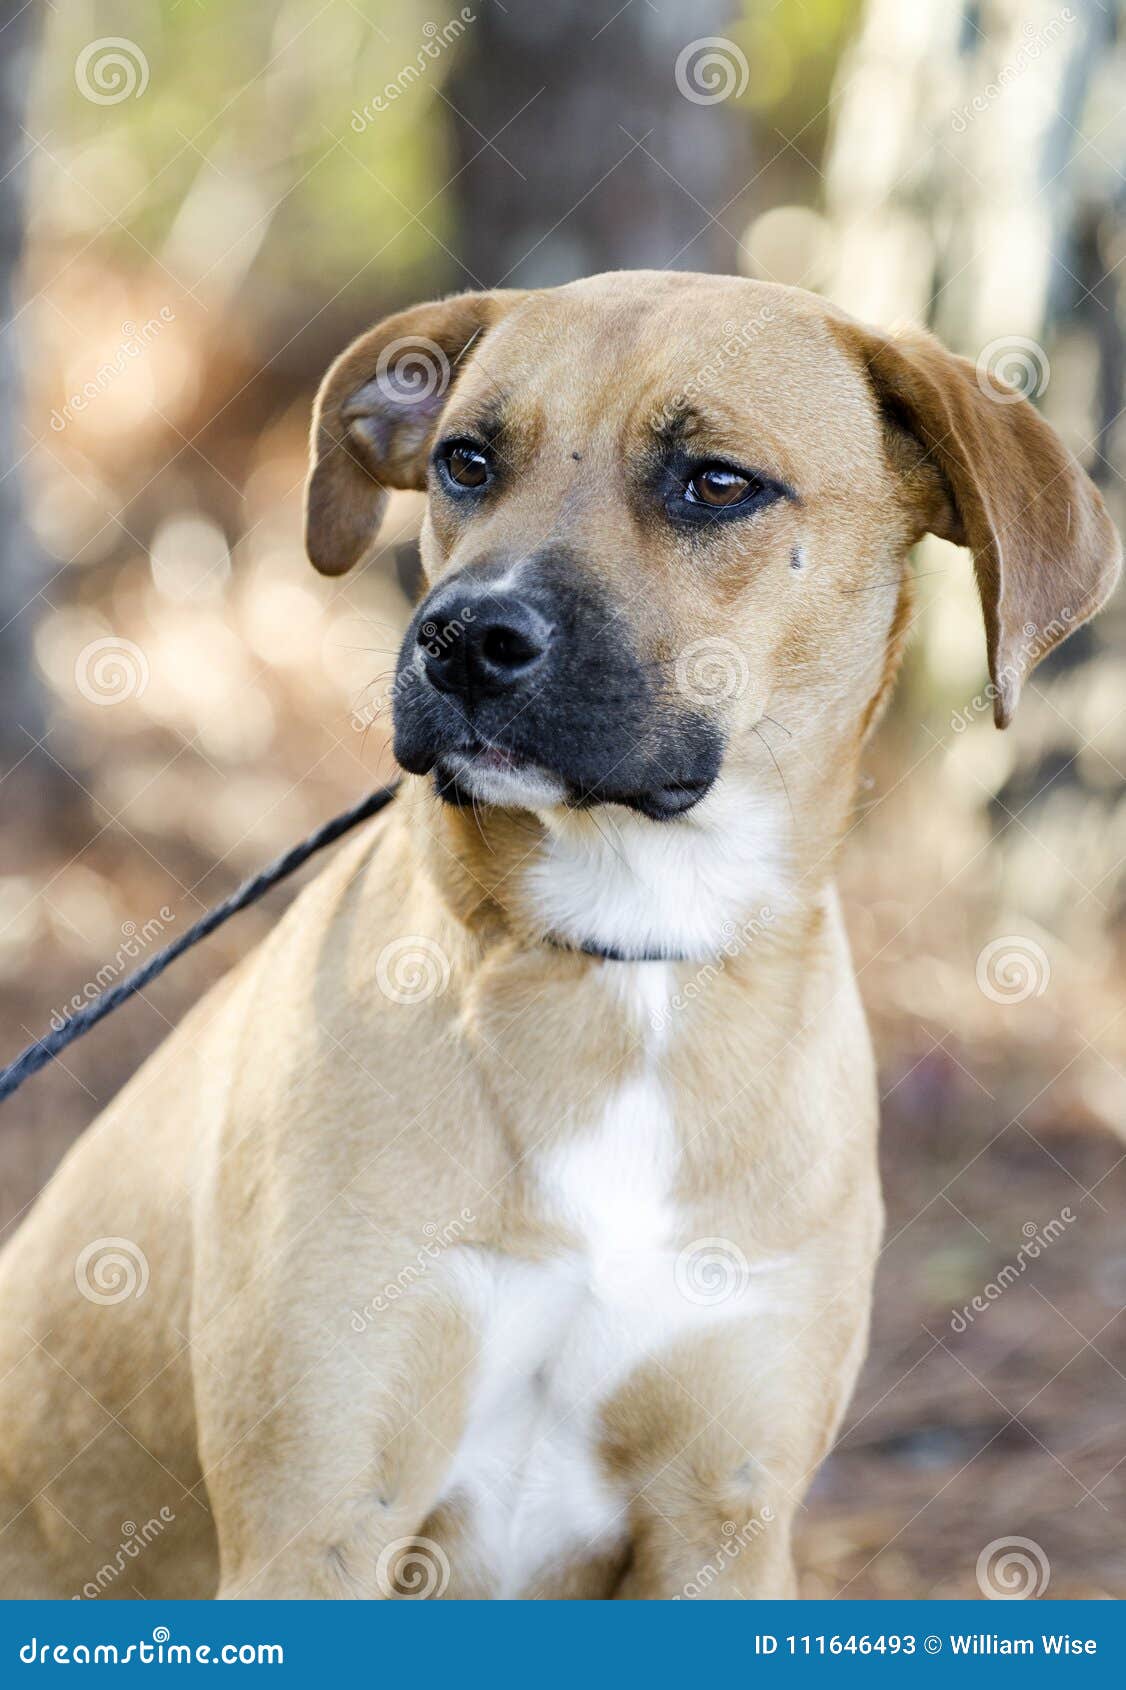 Hound Mixed Breed Dog with Black Muzzle Image - Image of shelter, 111646493